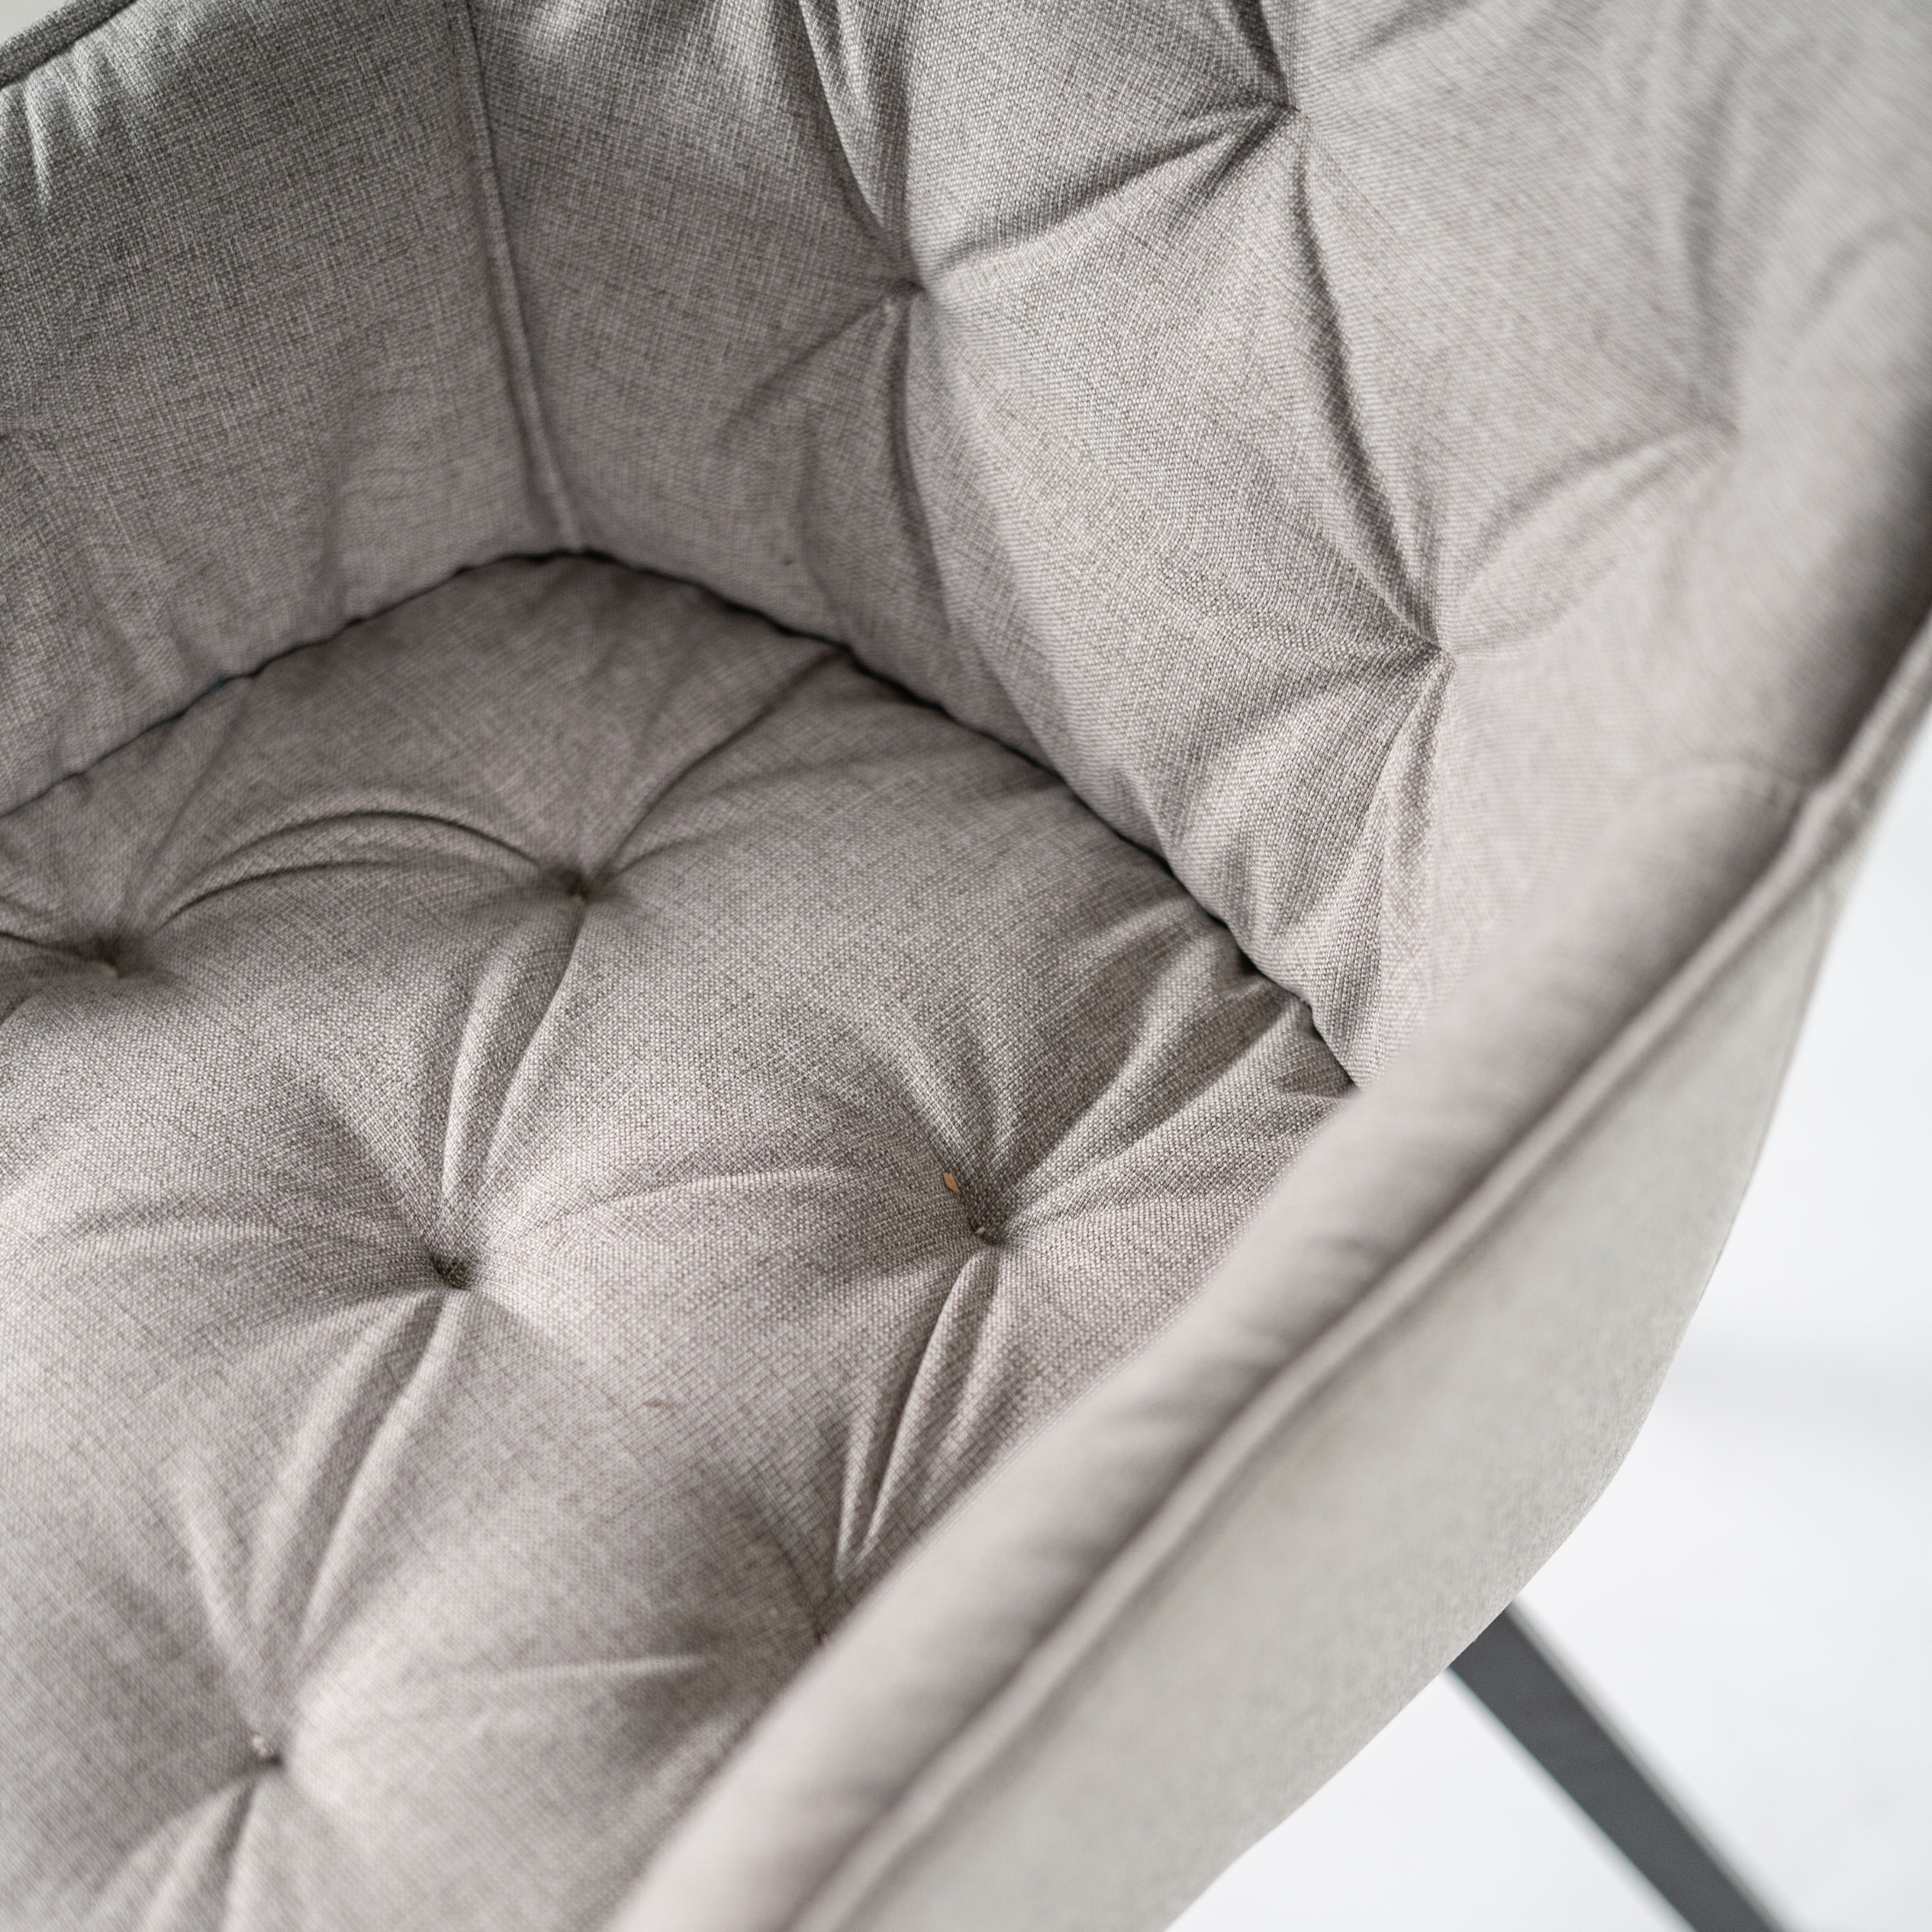 Set di sedie imbottite "Elsa" da soggiorno in tessuto gambe in metallo verniciato cm 55x60 79h